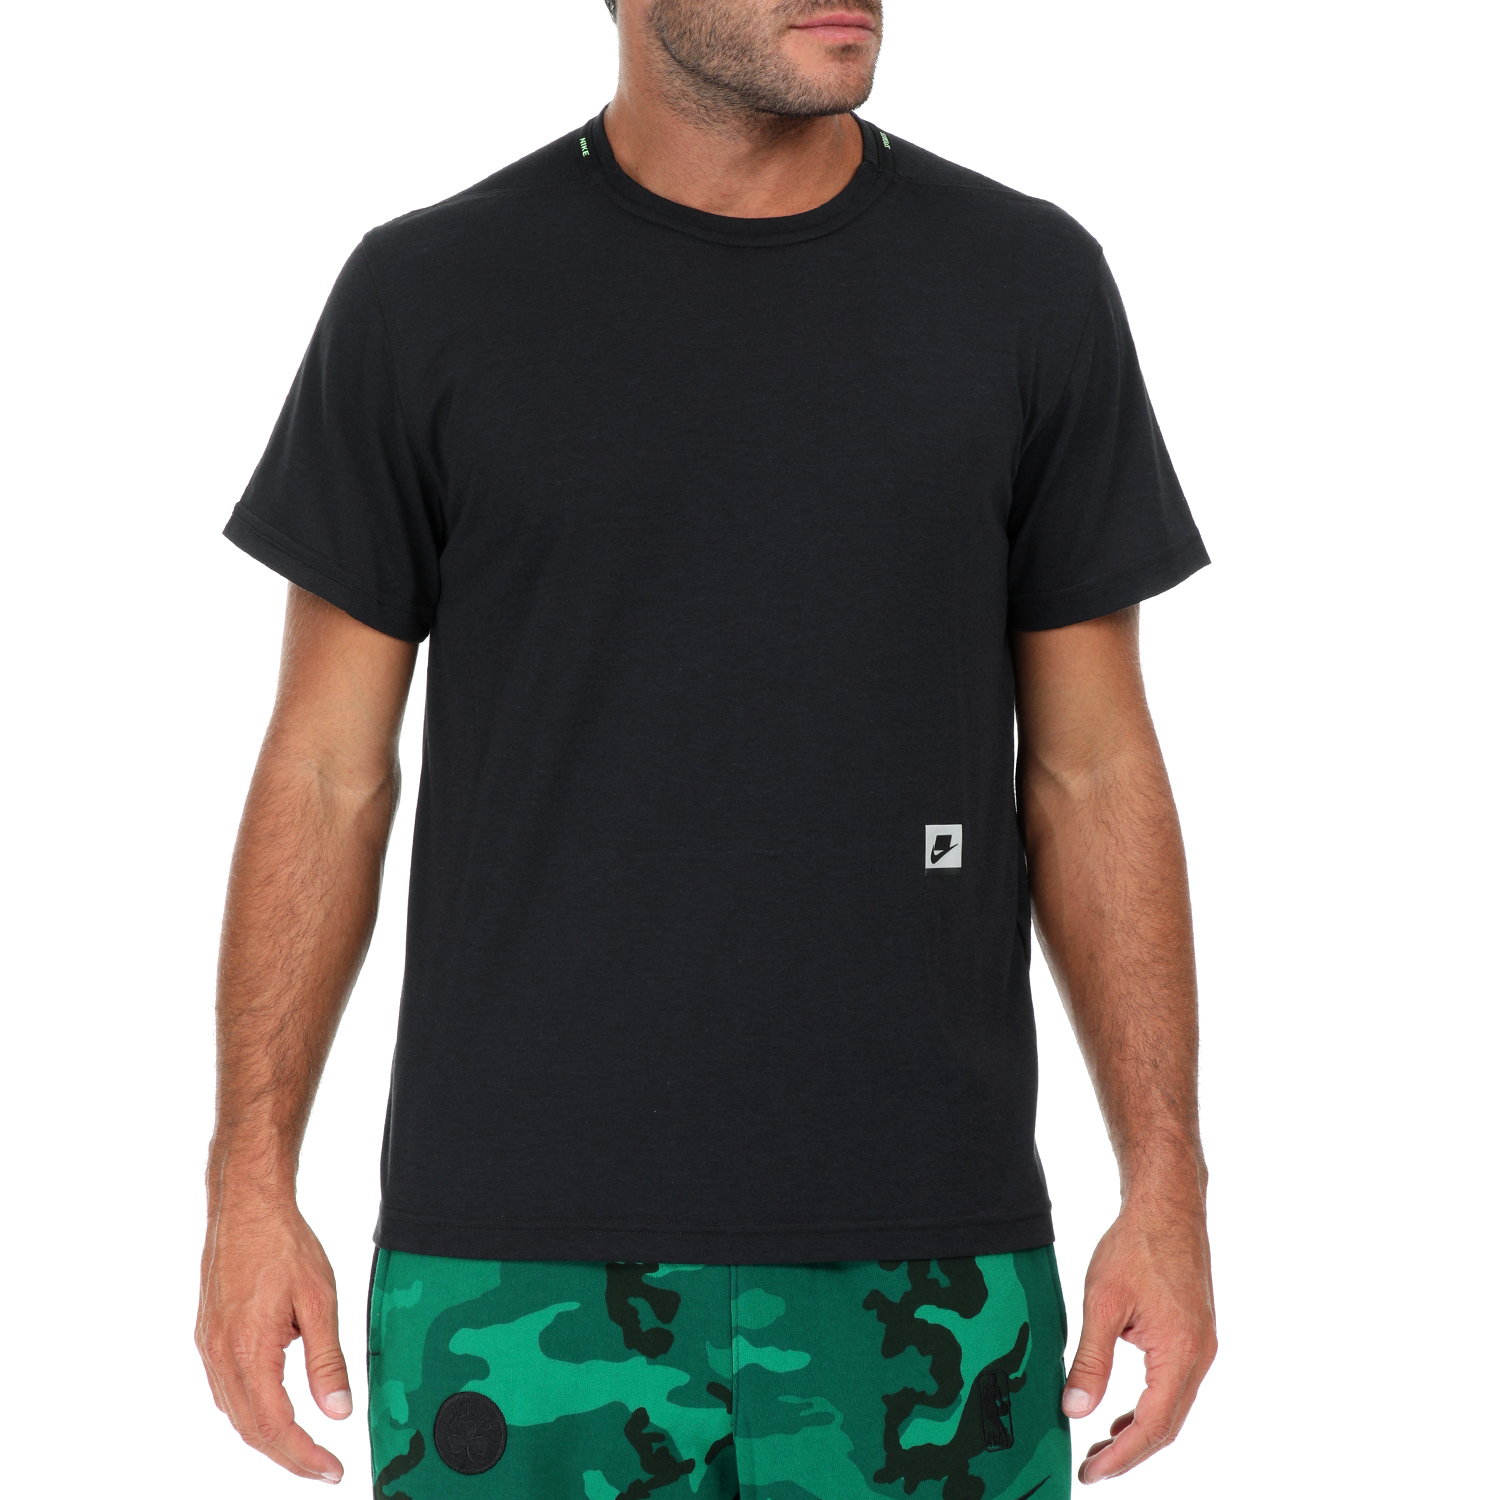 Ανδρικά/Ρούχα/Αθλητικά/T-shirt NIKE - Ανδρική κοντομάνικη μπλούζα NIKE DRY TOP SS PX μαύρη